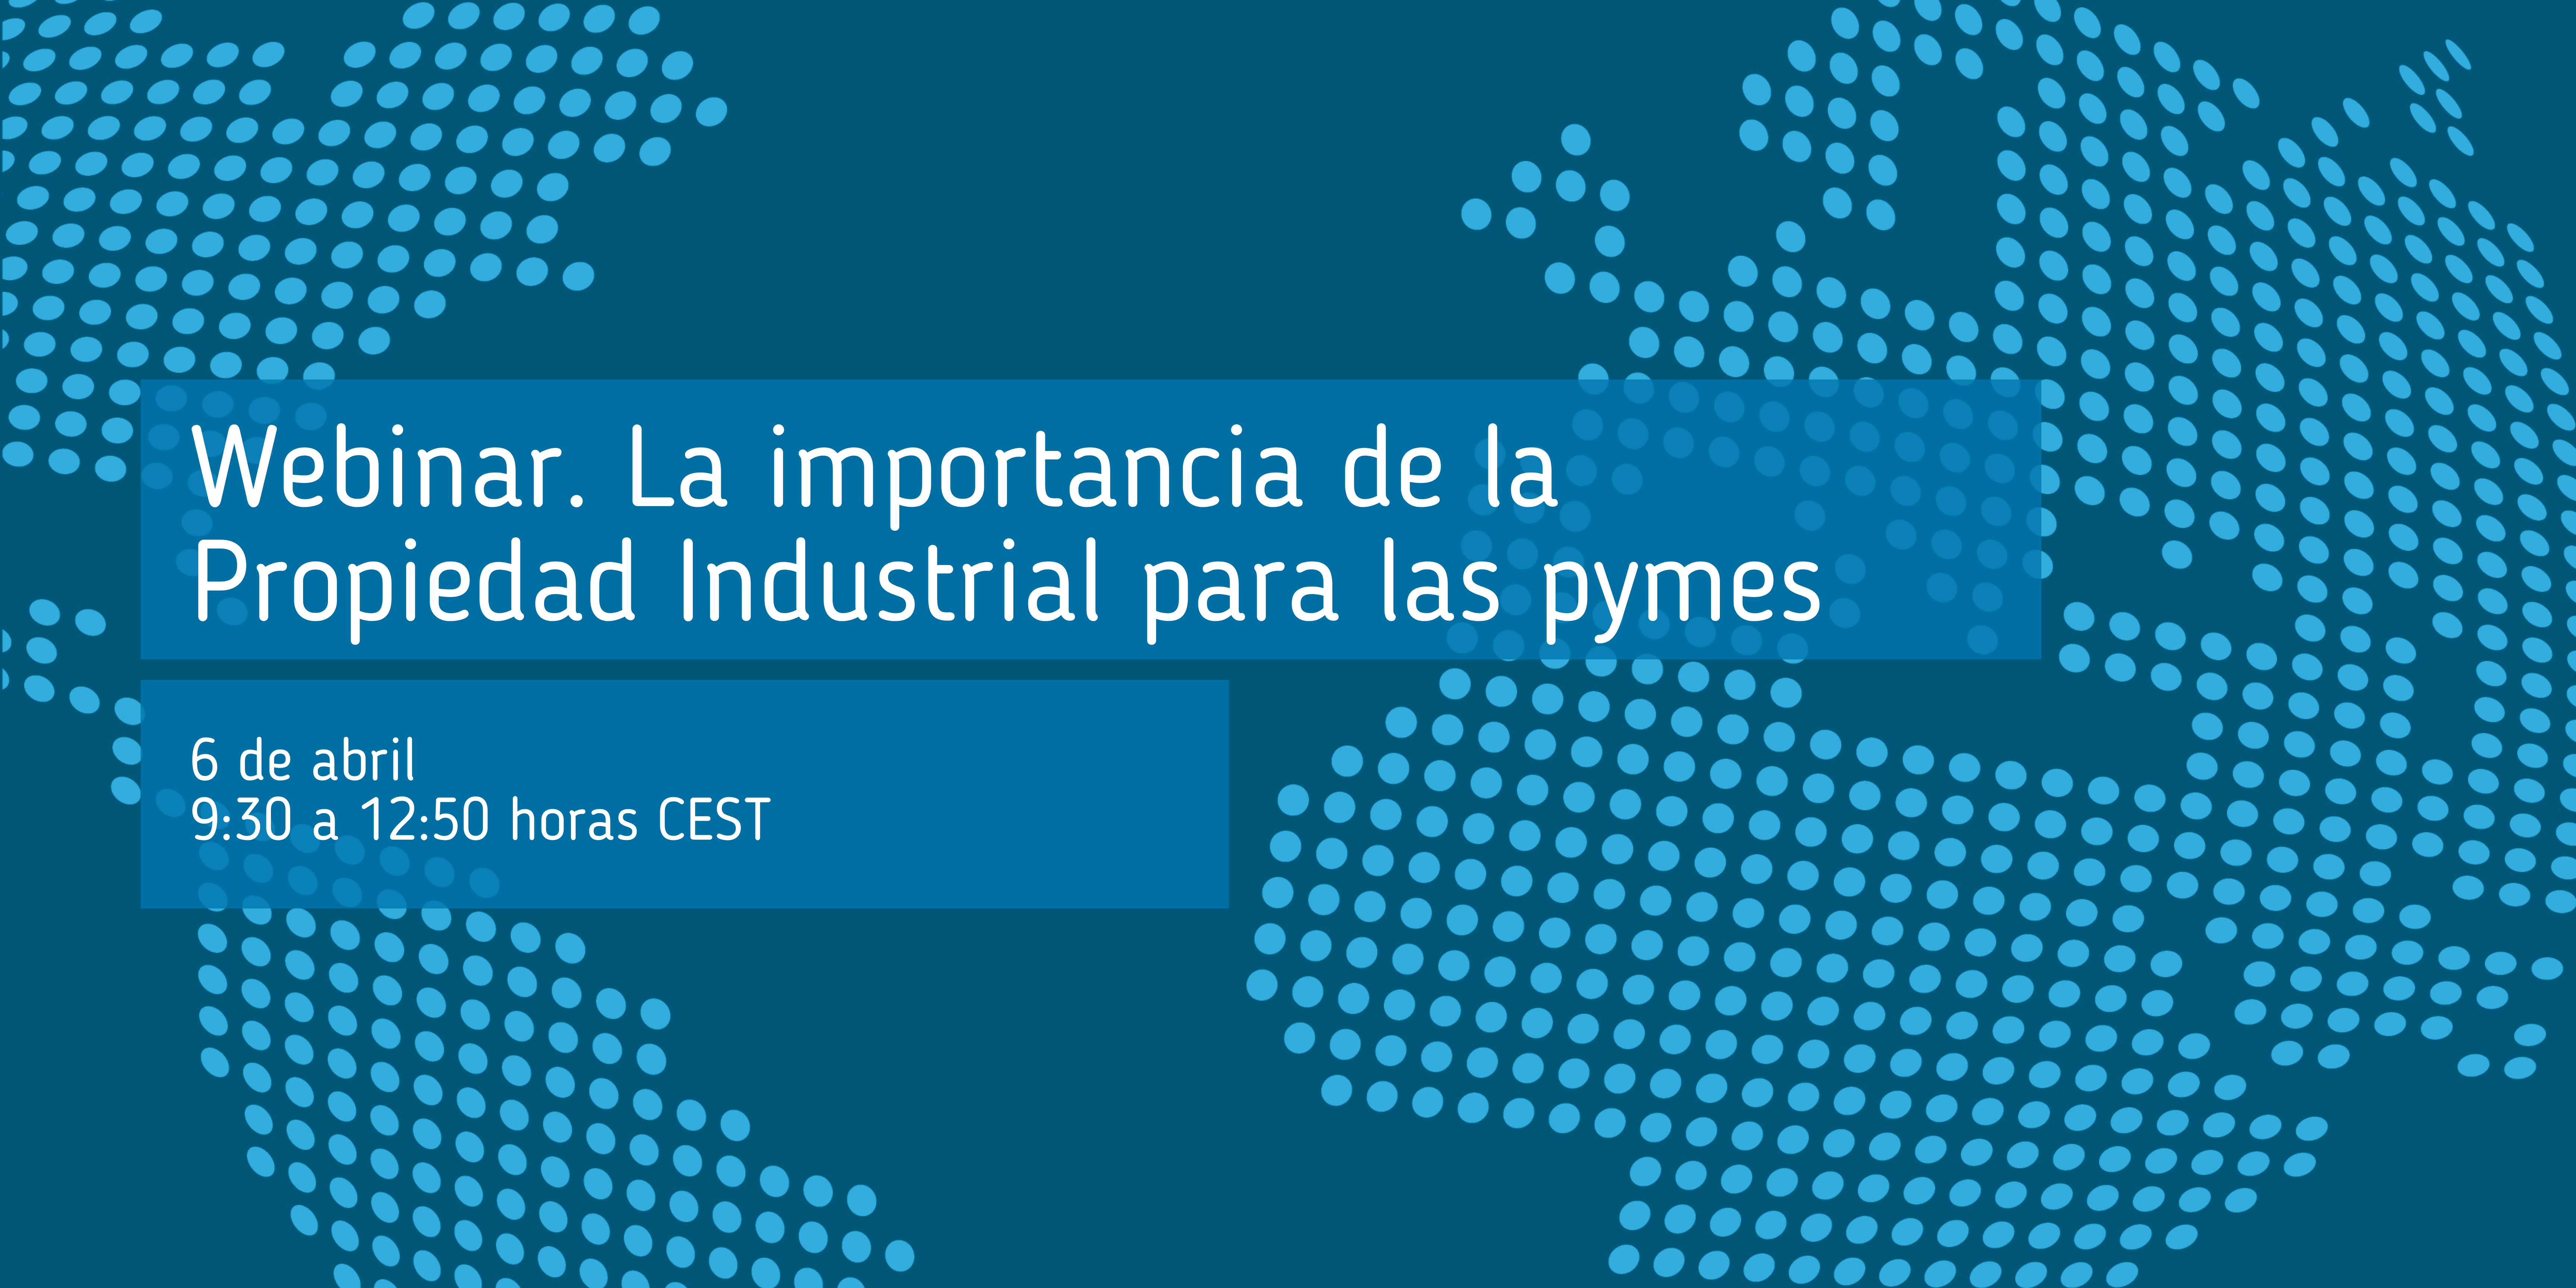 webinar_importancia_propiedad_industrial_para_pymes